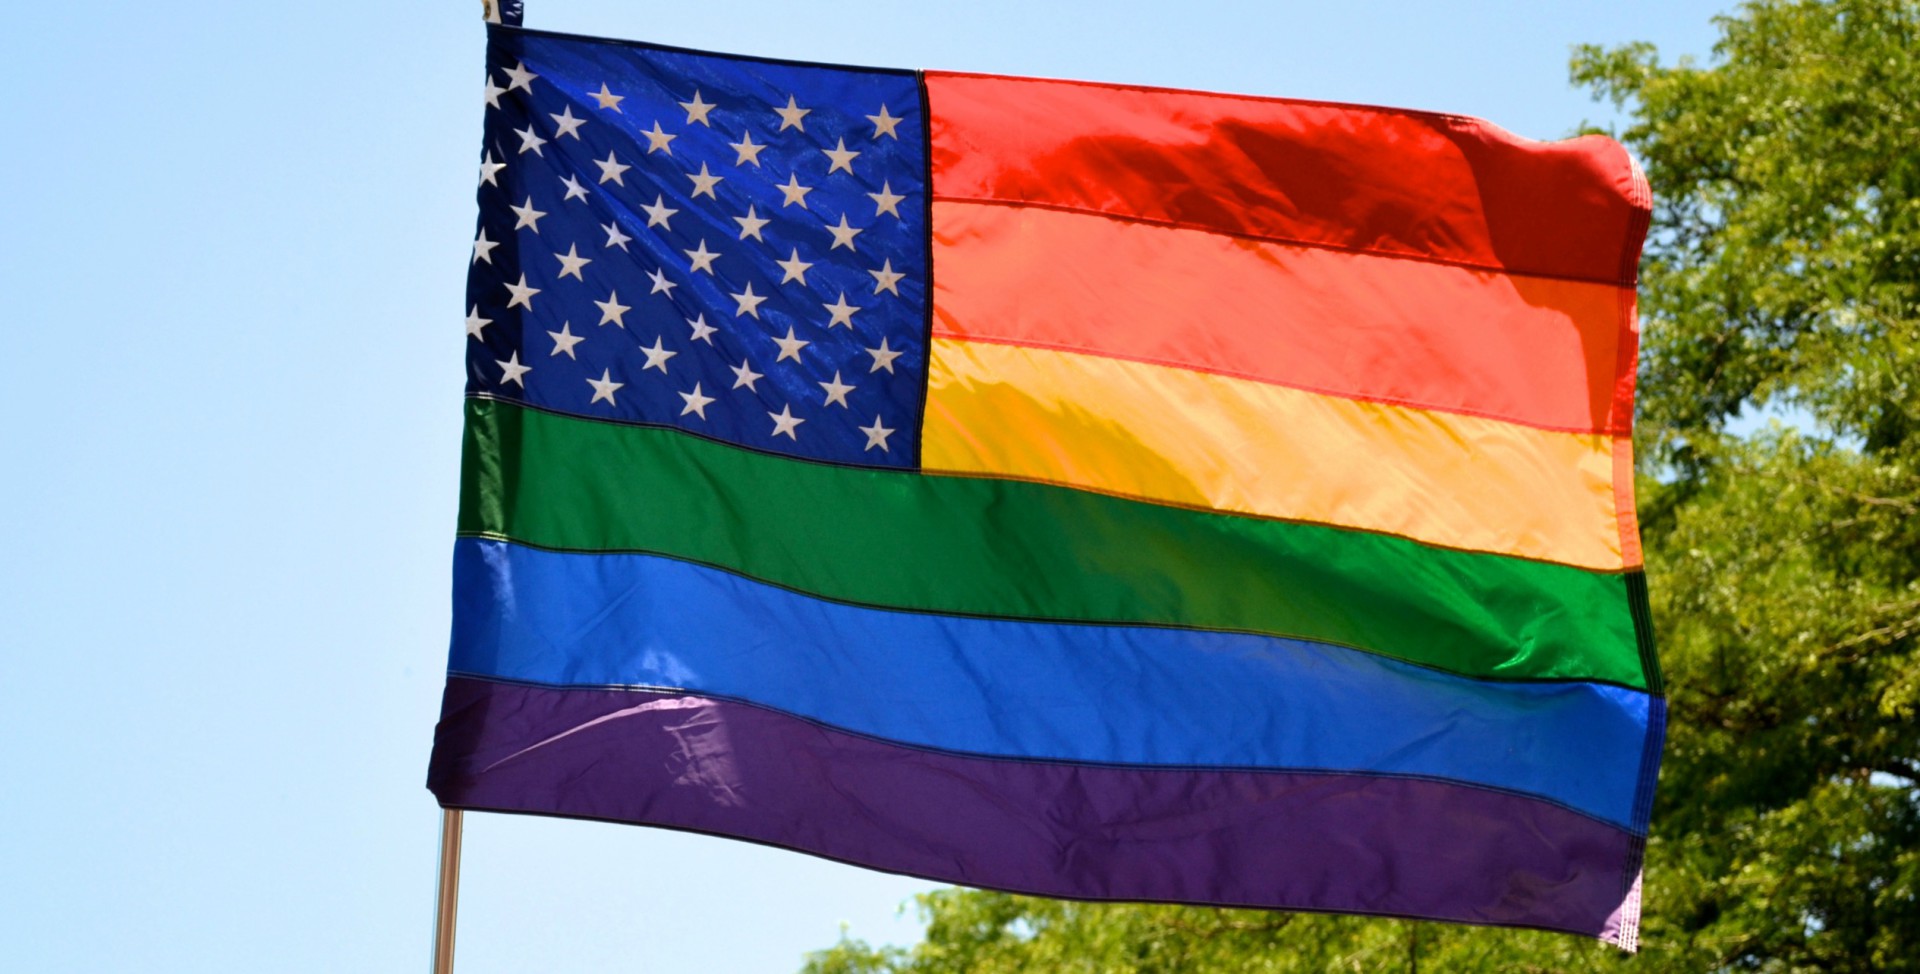 Le débat sur les personnes LGBT est vif aux Etats-Unis (Photo:nathanmac87/Flickr/CC BY 2.0)